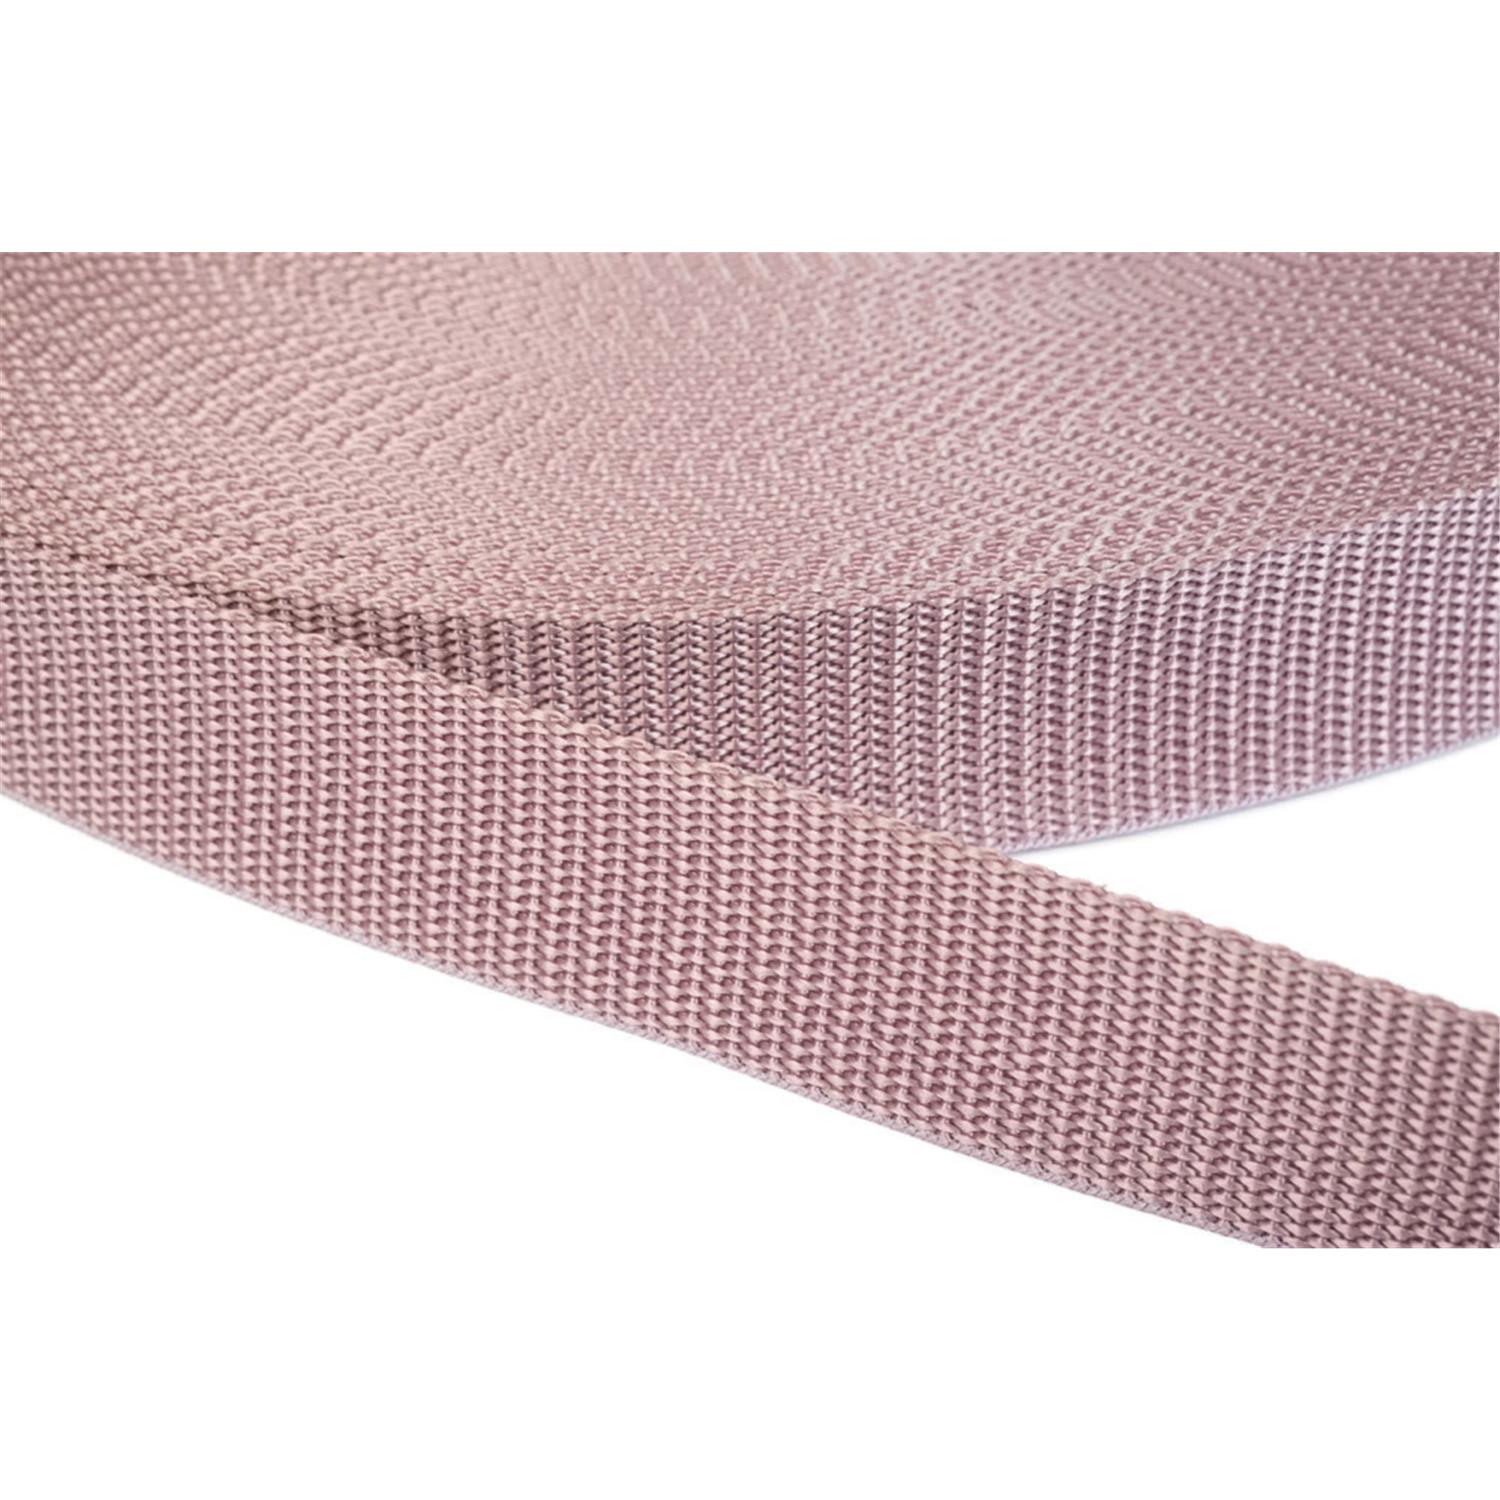 Gurtband 50mm breit aus Polypropylen in 41 Farben 15 - altrosa 50 Meter